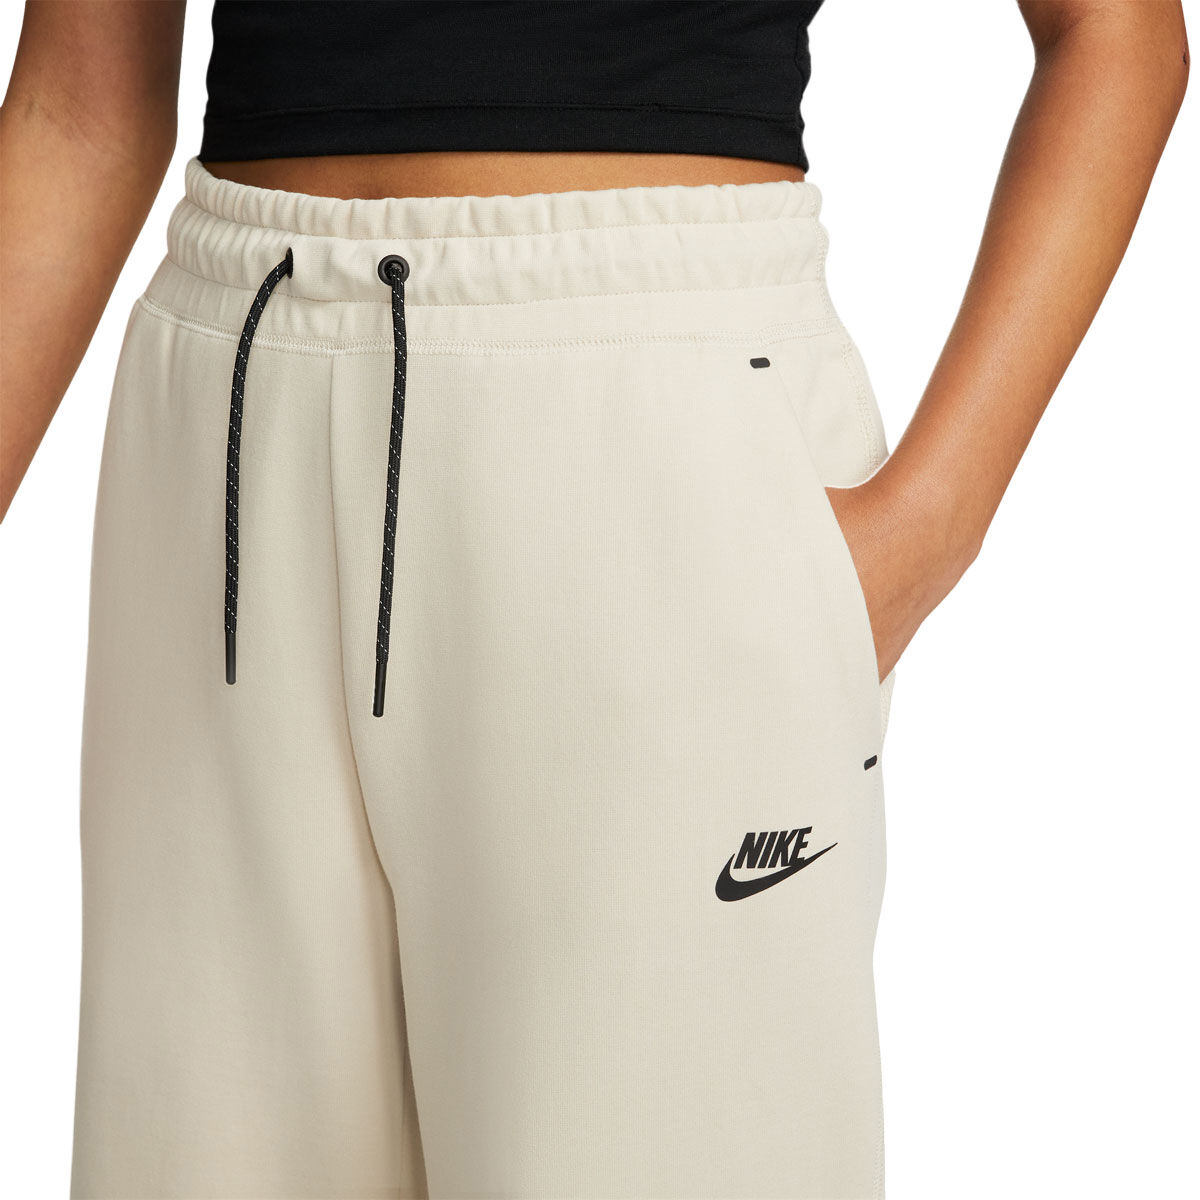 Nike Women's Tech Fleece Capri Culottes Shorts Heather Gray and